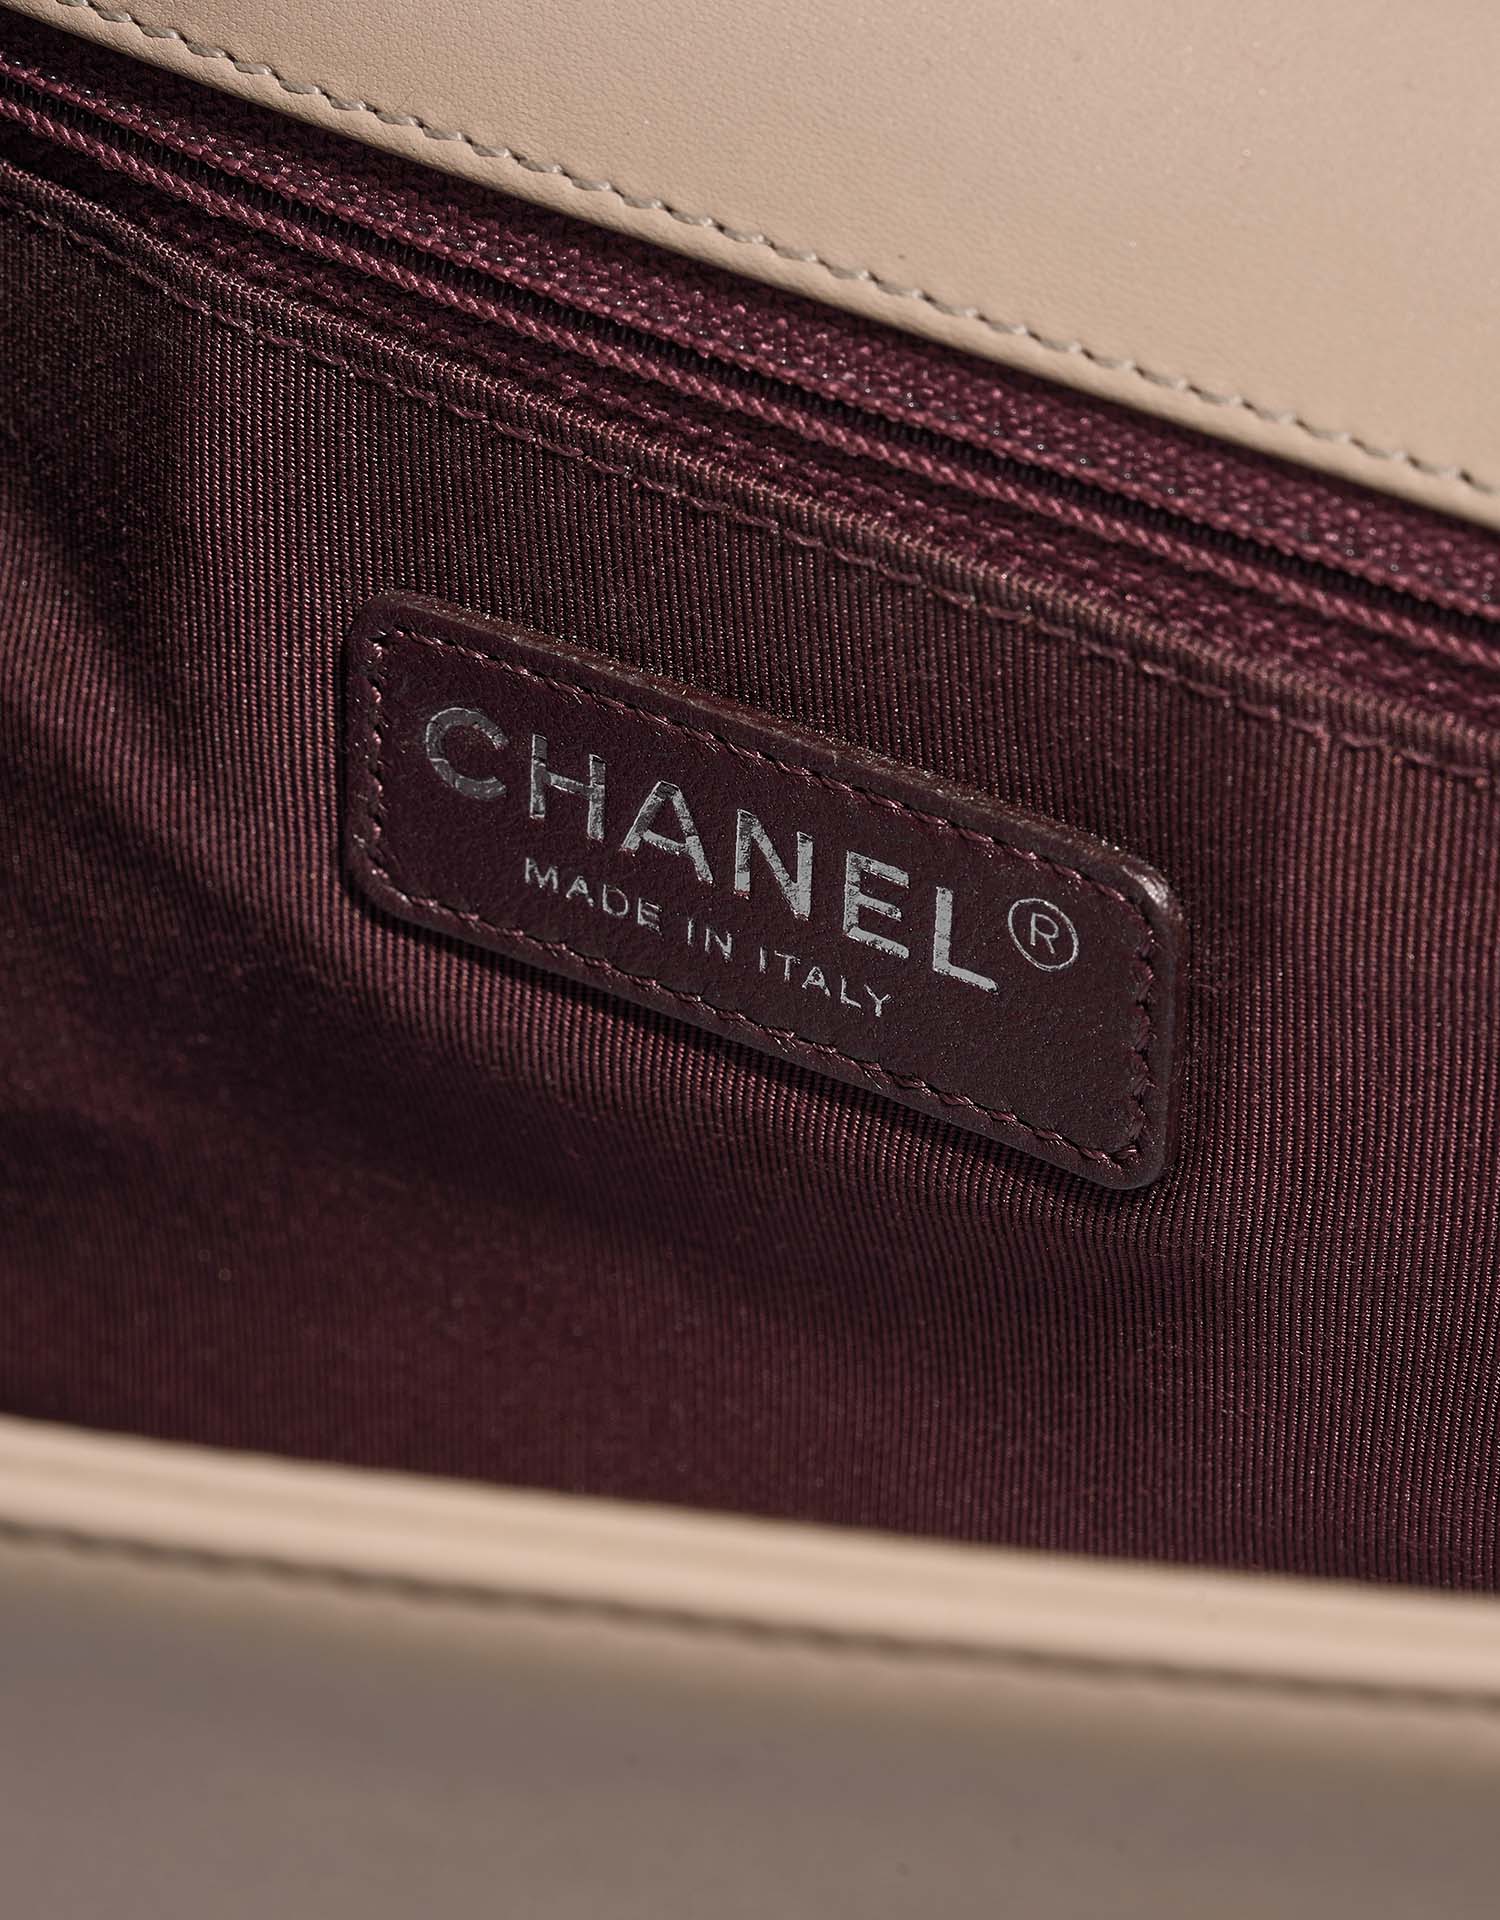 Chanel Boy NewMedium Beige Logo | Verkaufen Sie Ihre Designer-Tasche auf Saclab.com